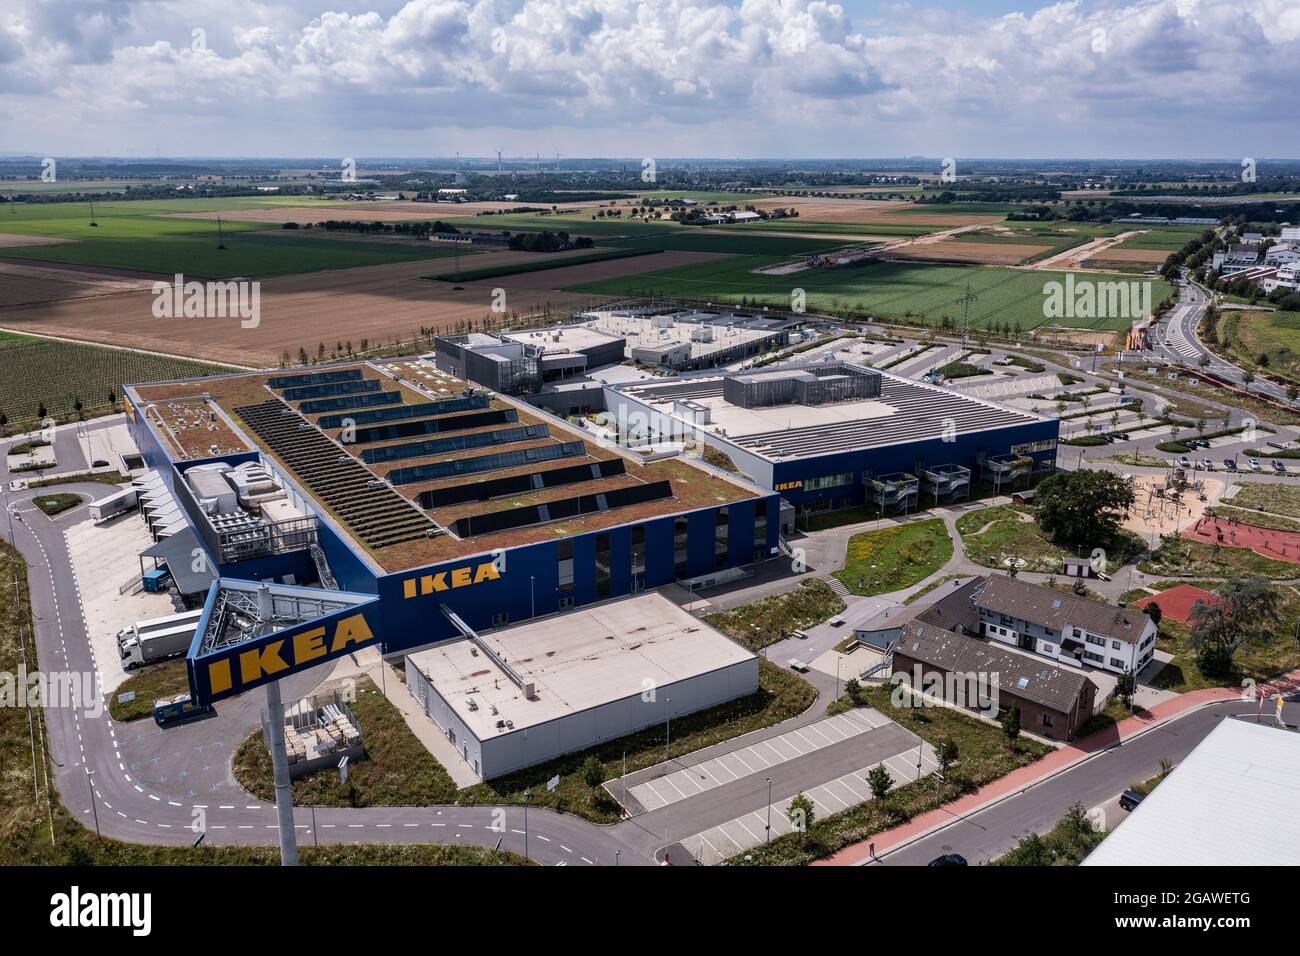 Luftaufnahme des Möbelhauses IKEA in Kaarst bei Düsseldorf. Der Bau gehört zu den größten Ikea-Einrichtungshäusern in Germania. Foto Stock